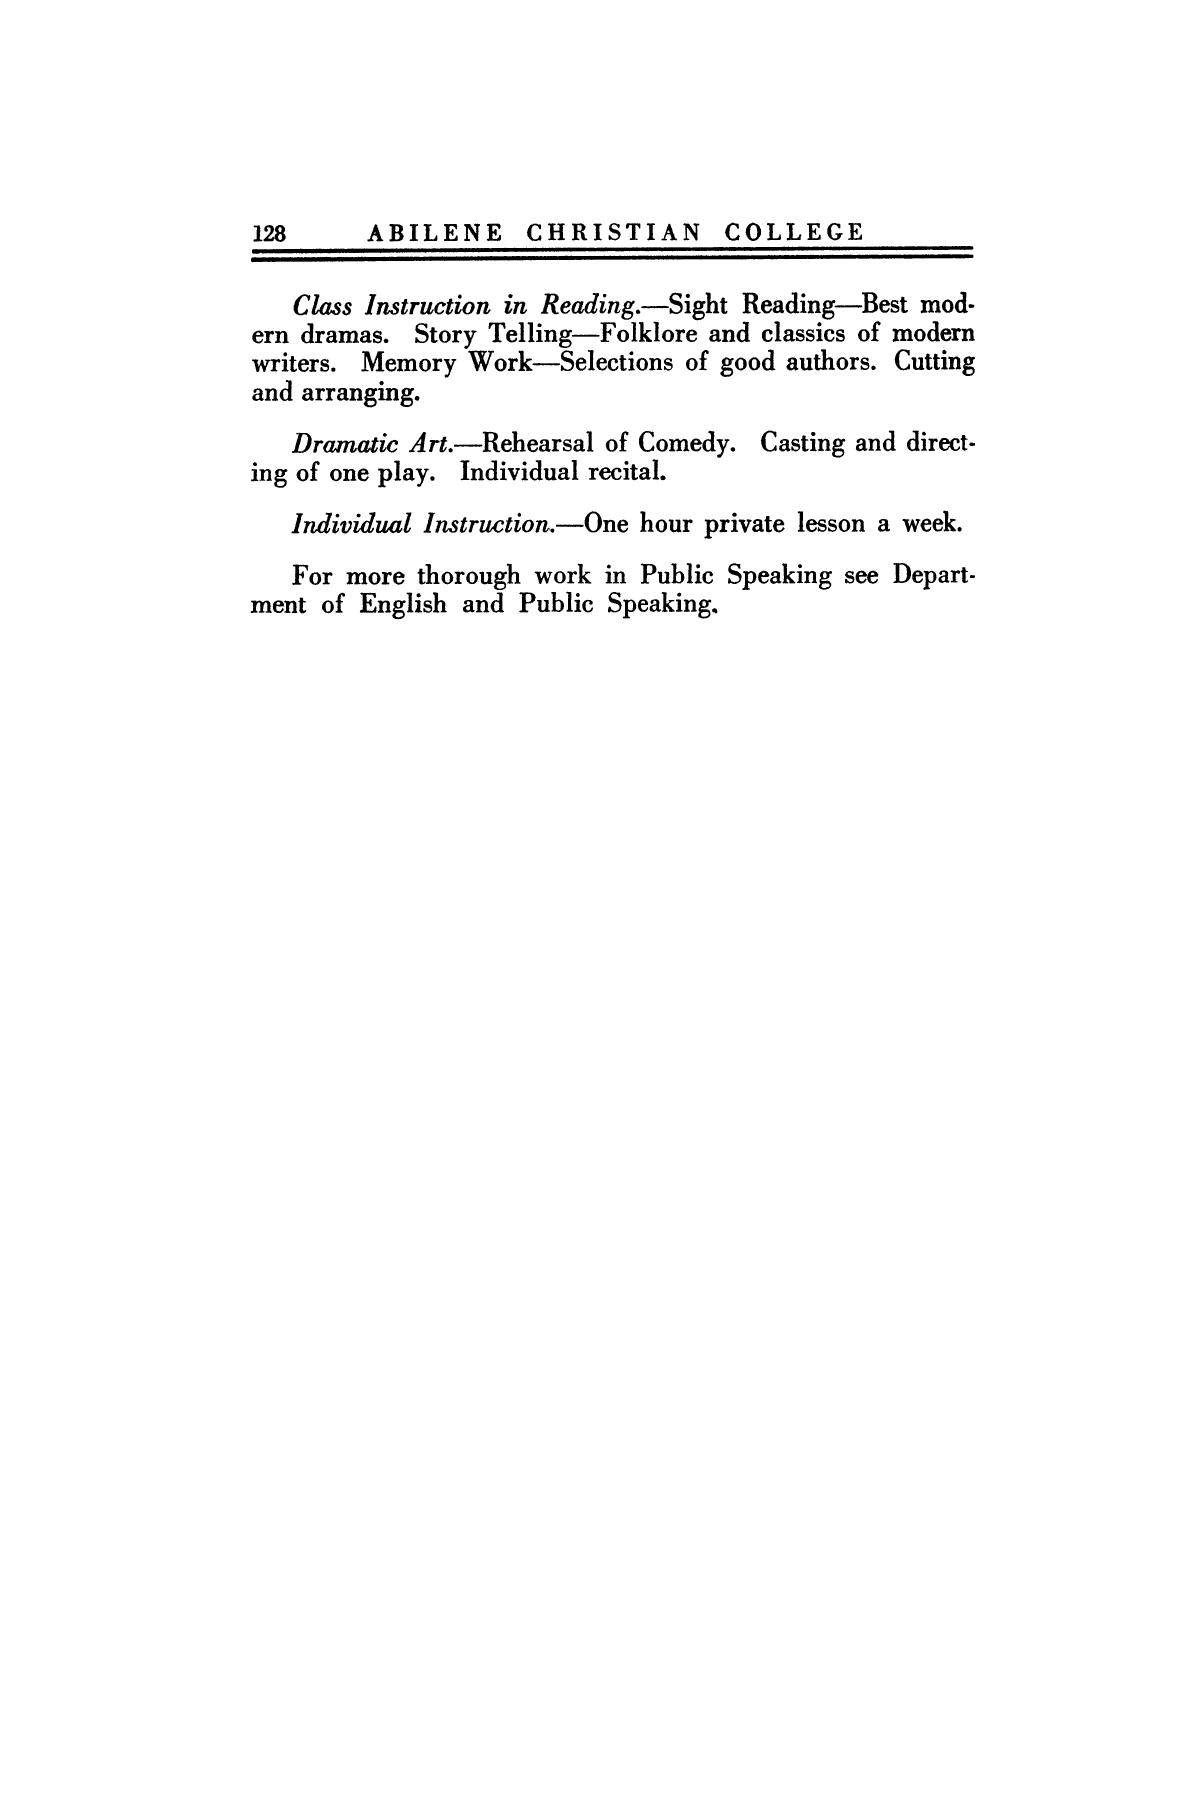 Catalog of Abilene Christian College, 1923-1924
                                                
                                                    128
                                                